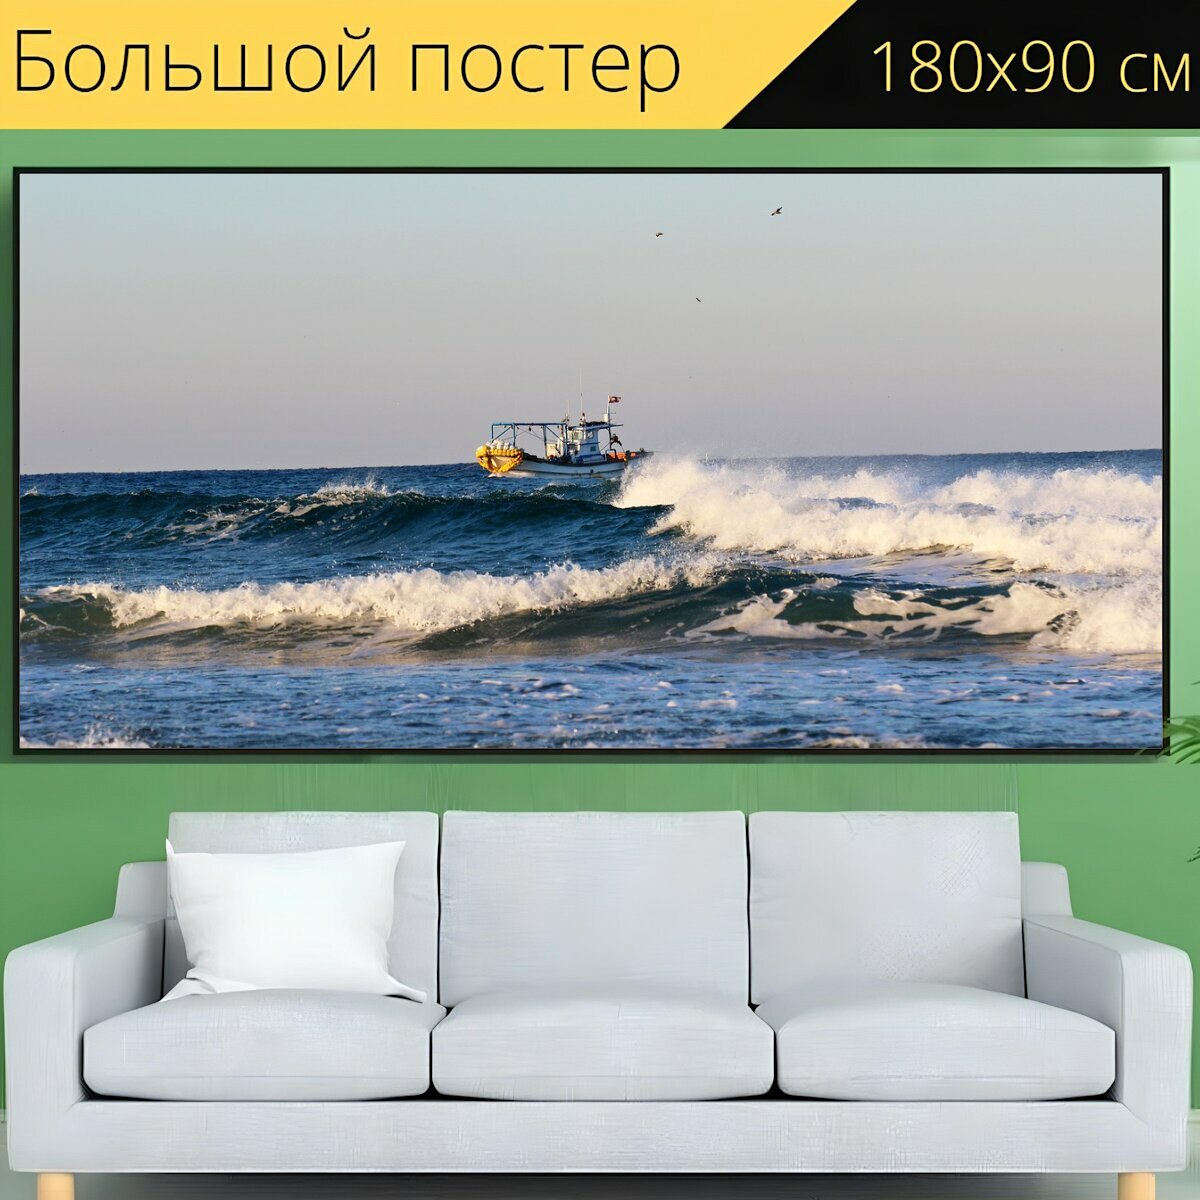 Большой постер "Рыболовная лодка, море, волны" 180 x 90 см. для интерьера